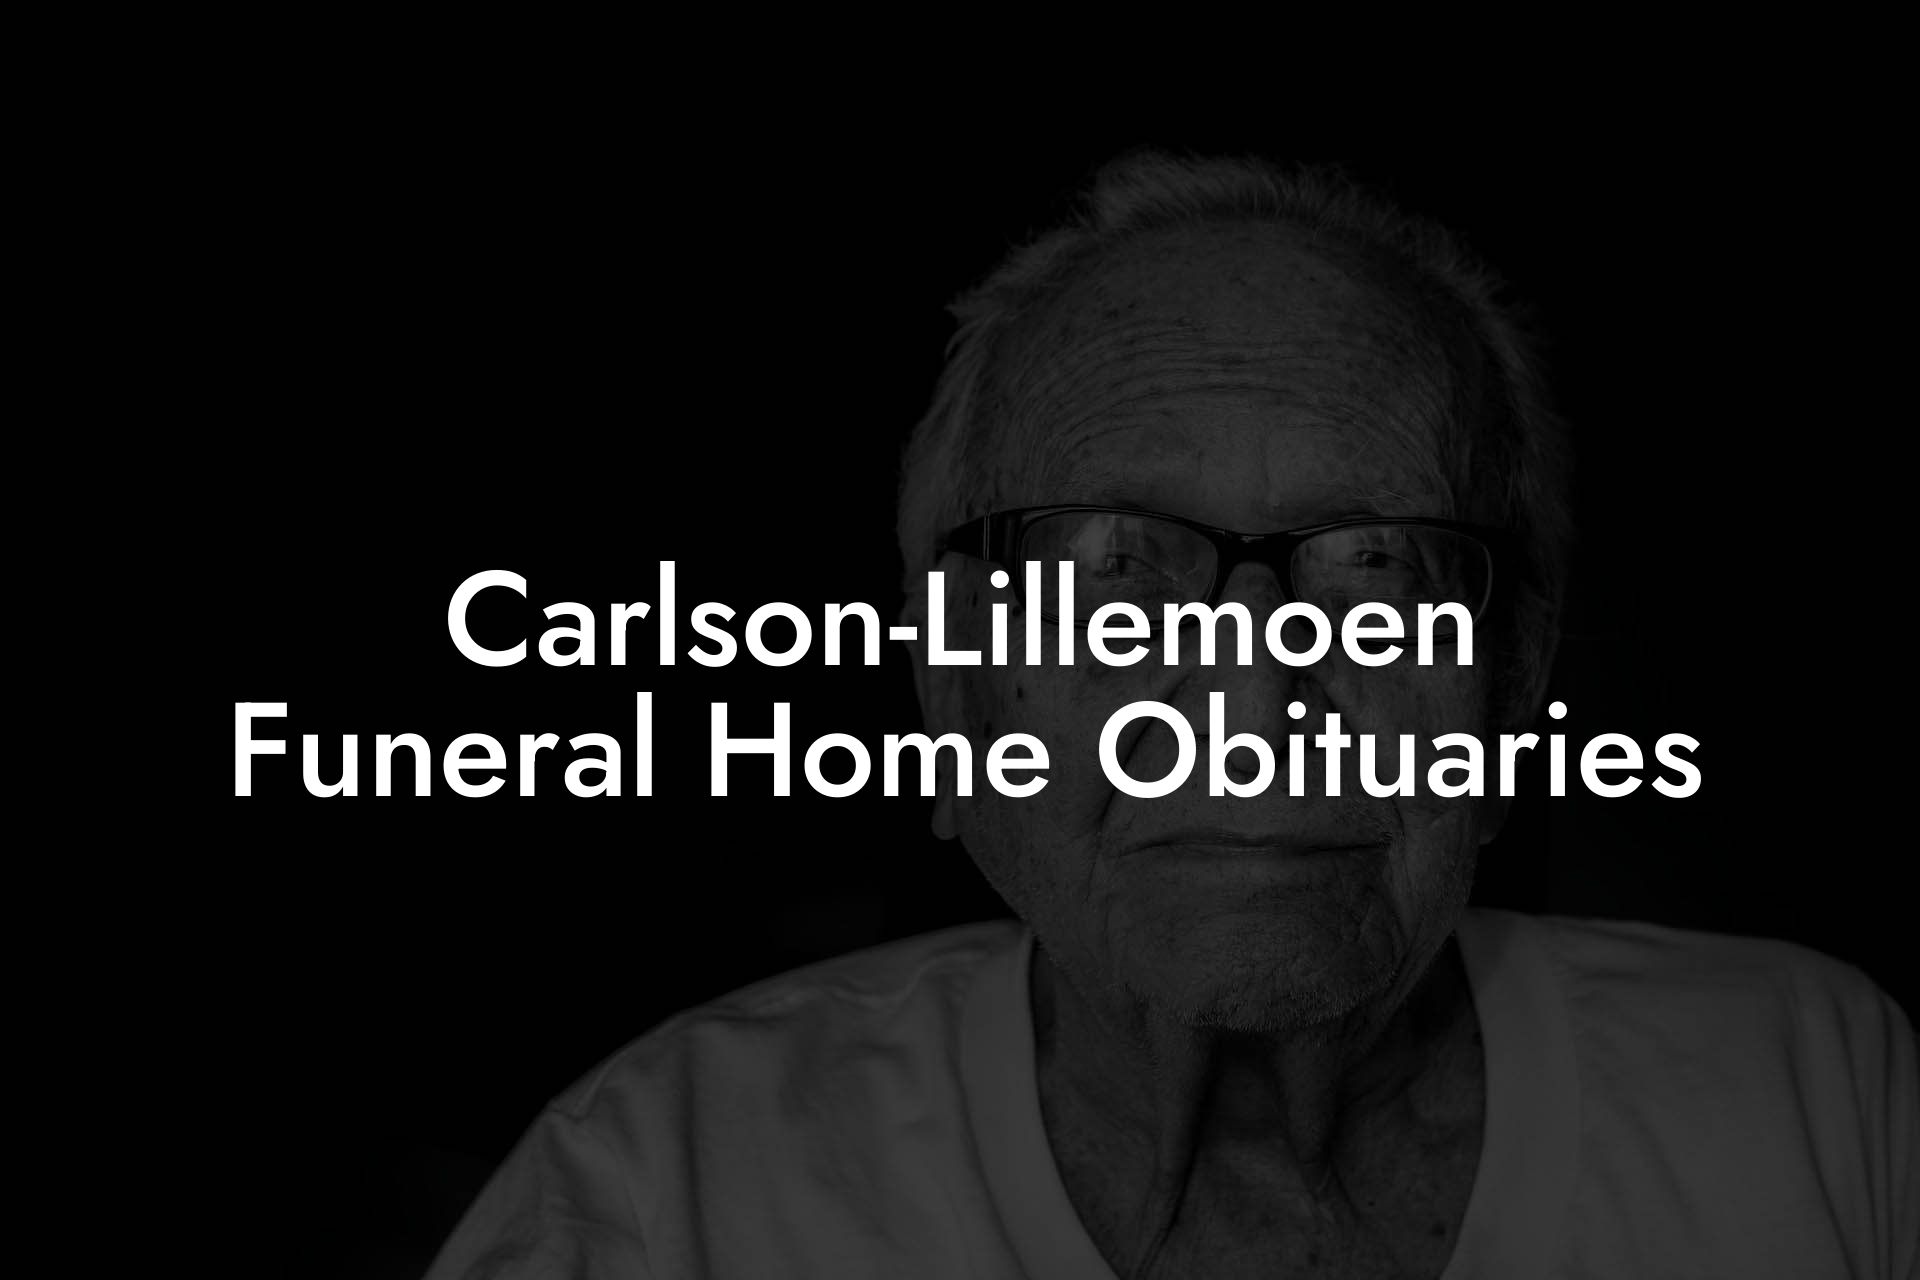 Carlson-Lillemoen Funeral Home Obituaries